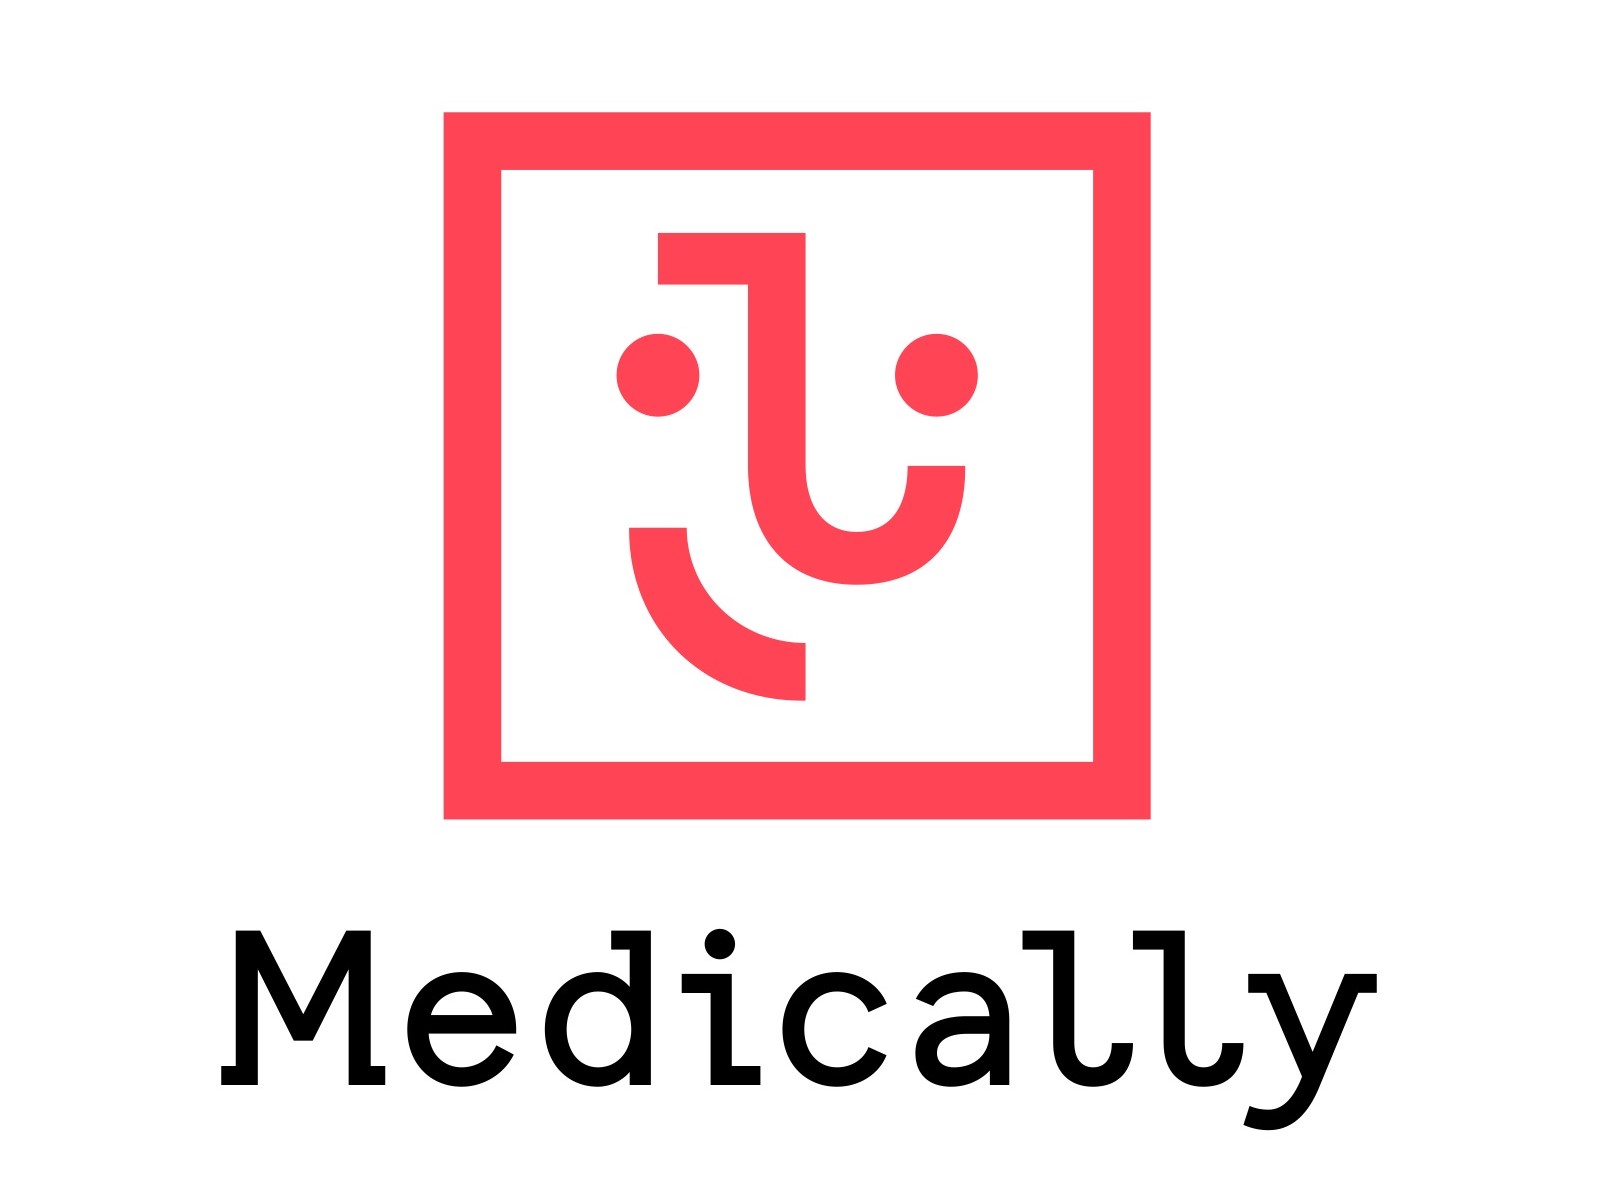 オンライン診療サービス「MEDICALLY」は、生活習慣病を主たる対象としたサービスです。対象疾患と提供手段を限定することで合理的な医療を実現します。また、患者さんにとっては従来にない予防医療の考えに基づく医療を受けることができます。